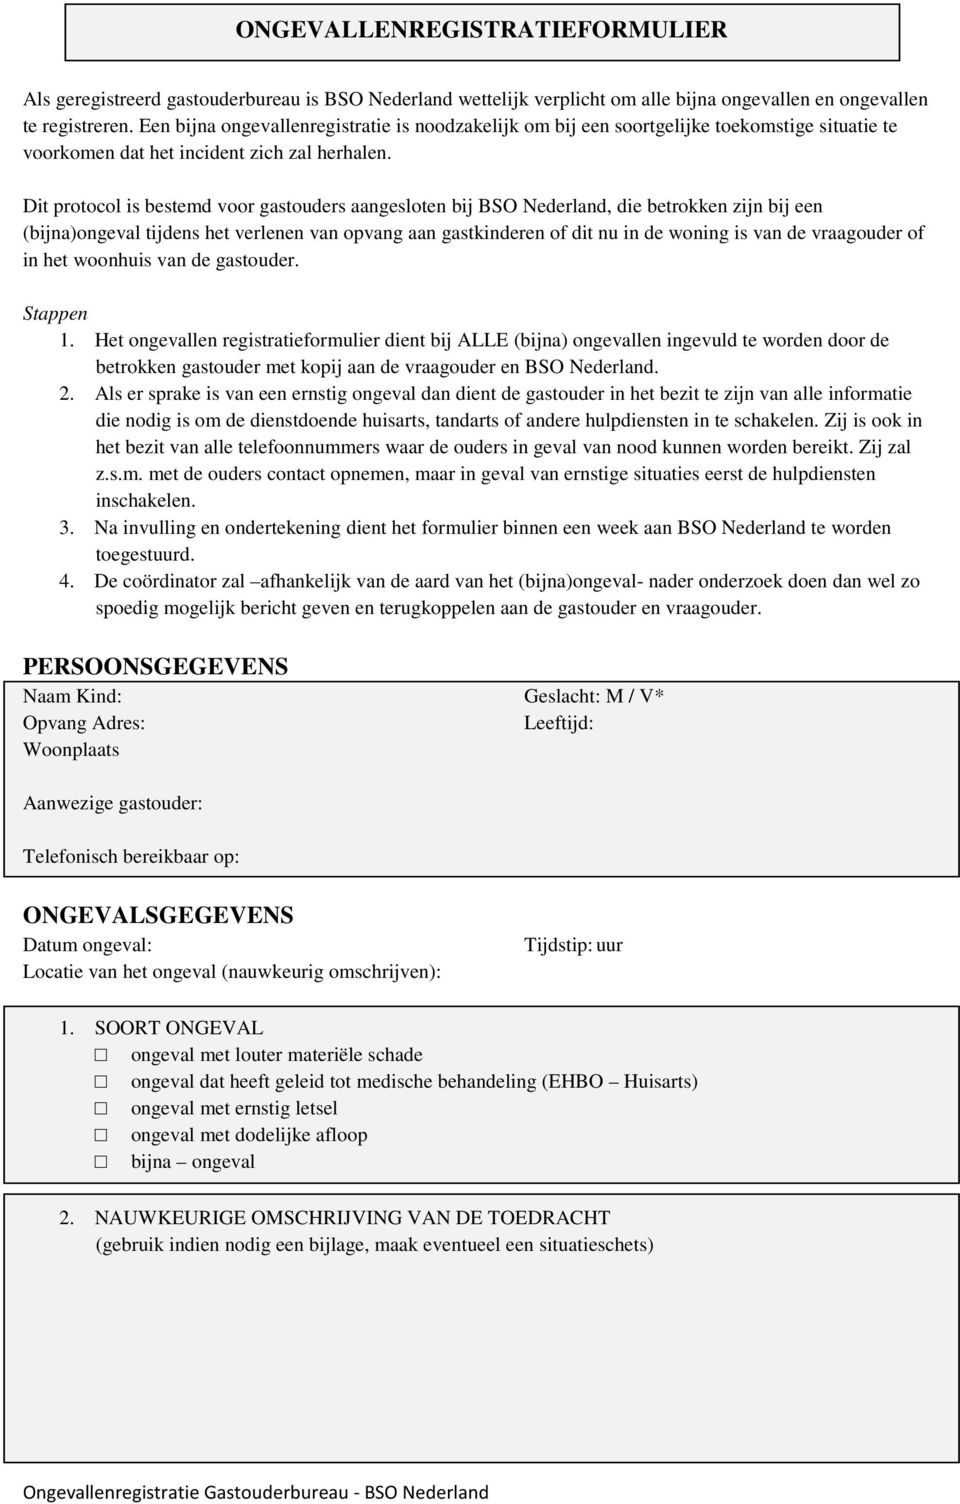 Dit protocol is bestemd voor gastouders aangesloten bij BSO Nederland, die betrokken zijn bij een (bijna)ongeval tijdens het verlenen van opvang aan gastkinderen of dit nu in de woning is van de